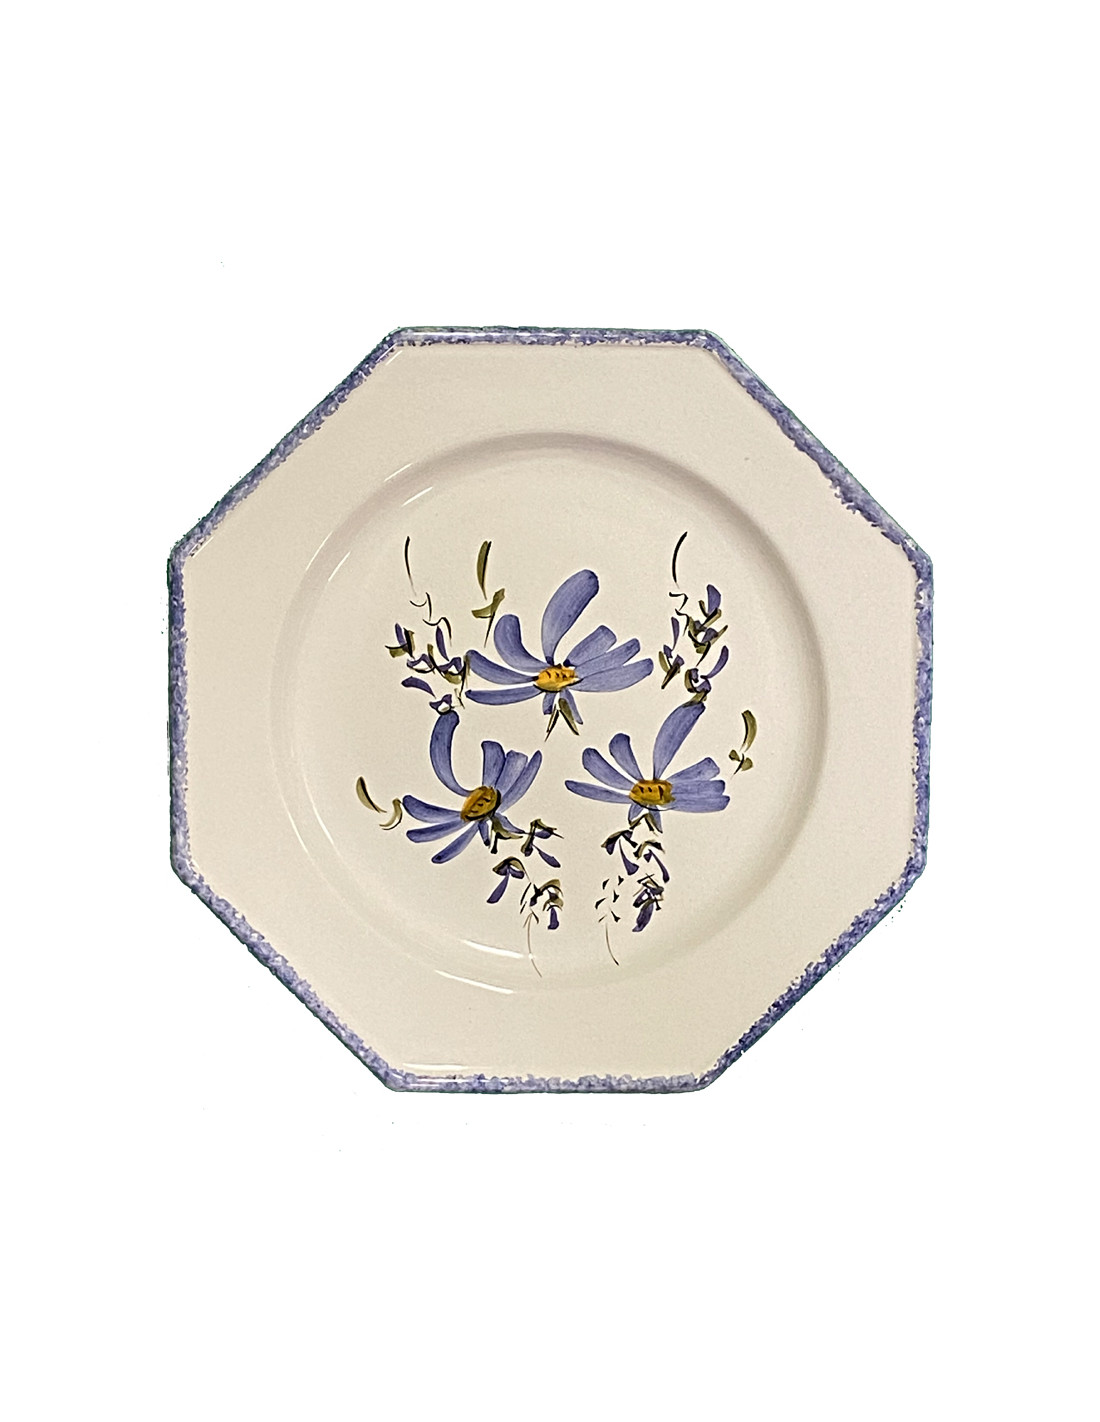 Assiette plate en faience blanche modèle octogonale décor artisanal fleurs  bleues